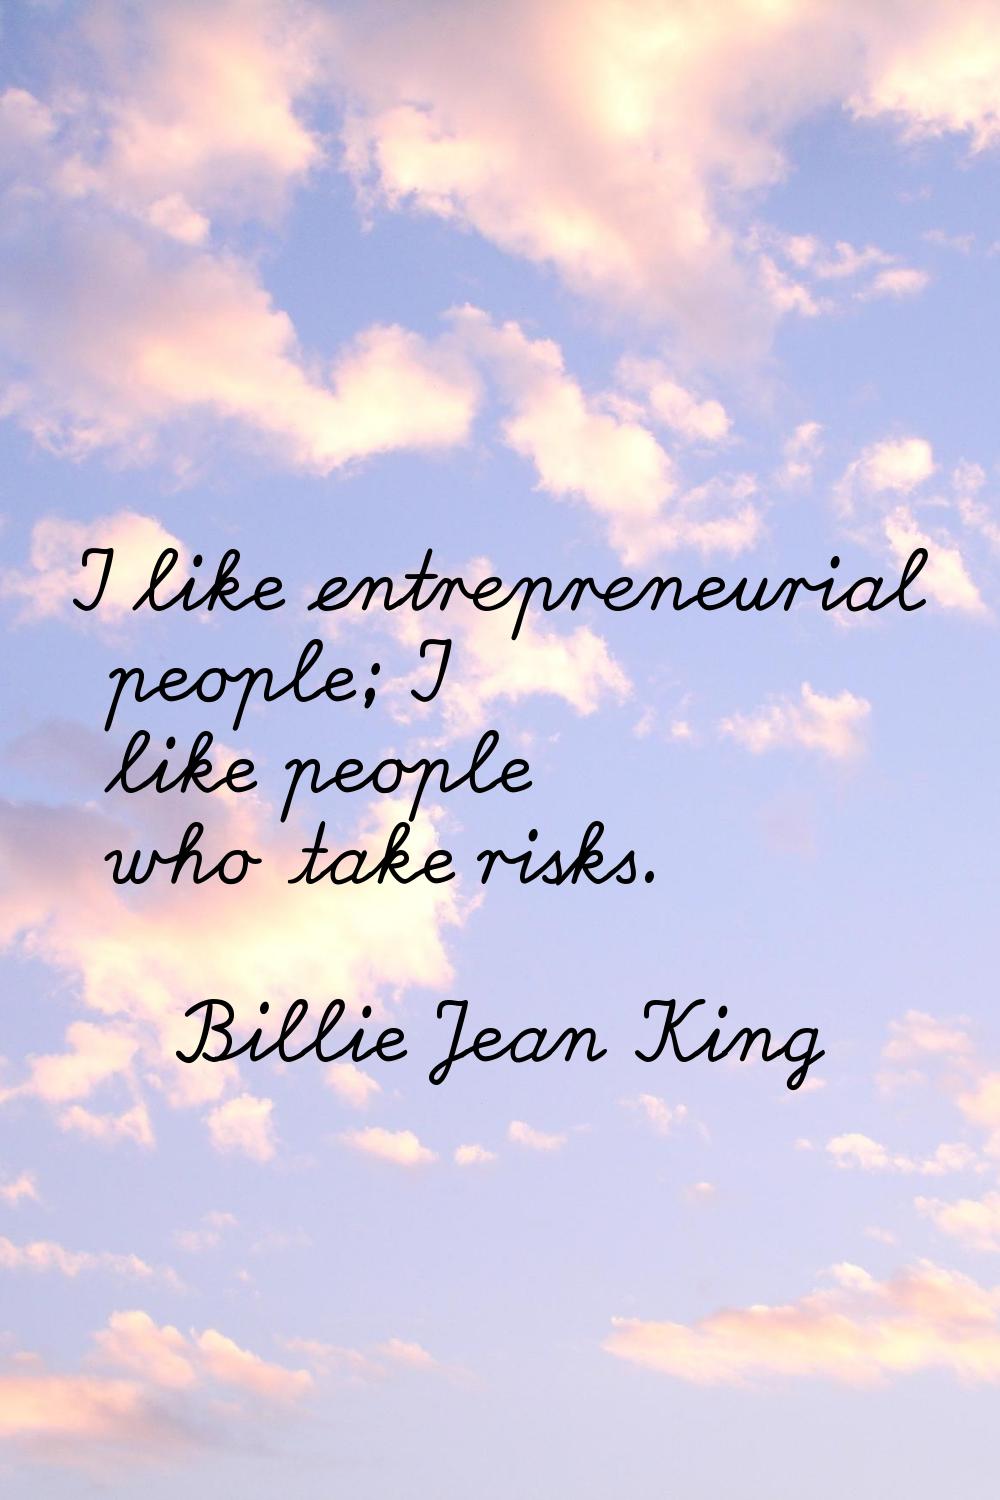 I like entrepreneurial people; I like people who take risks.